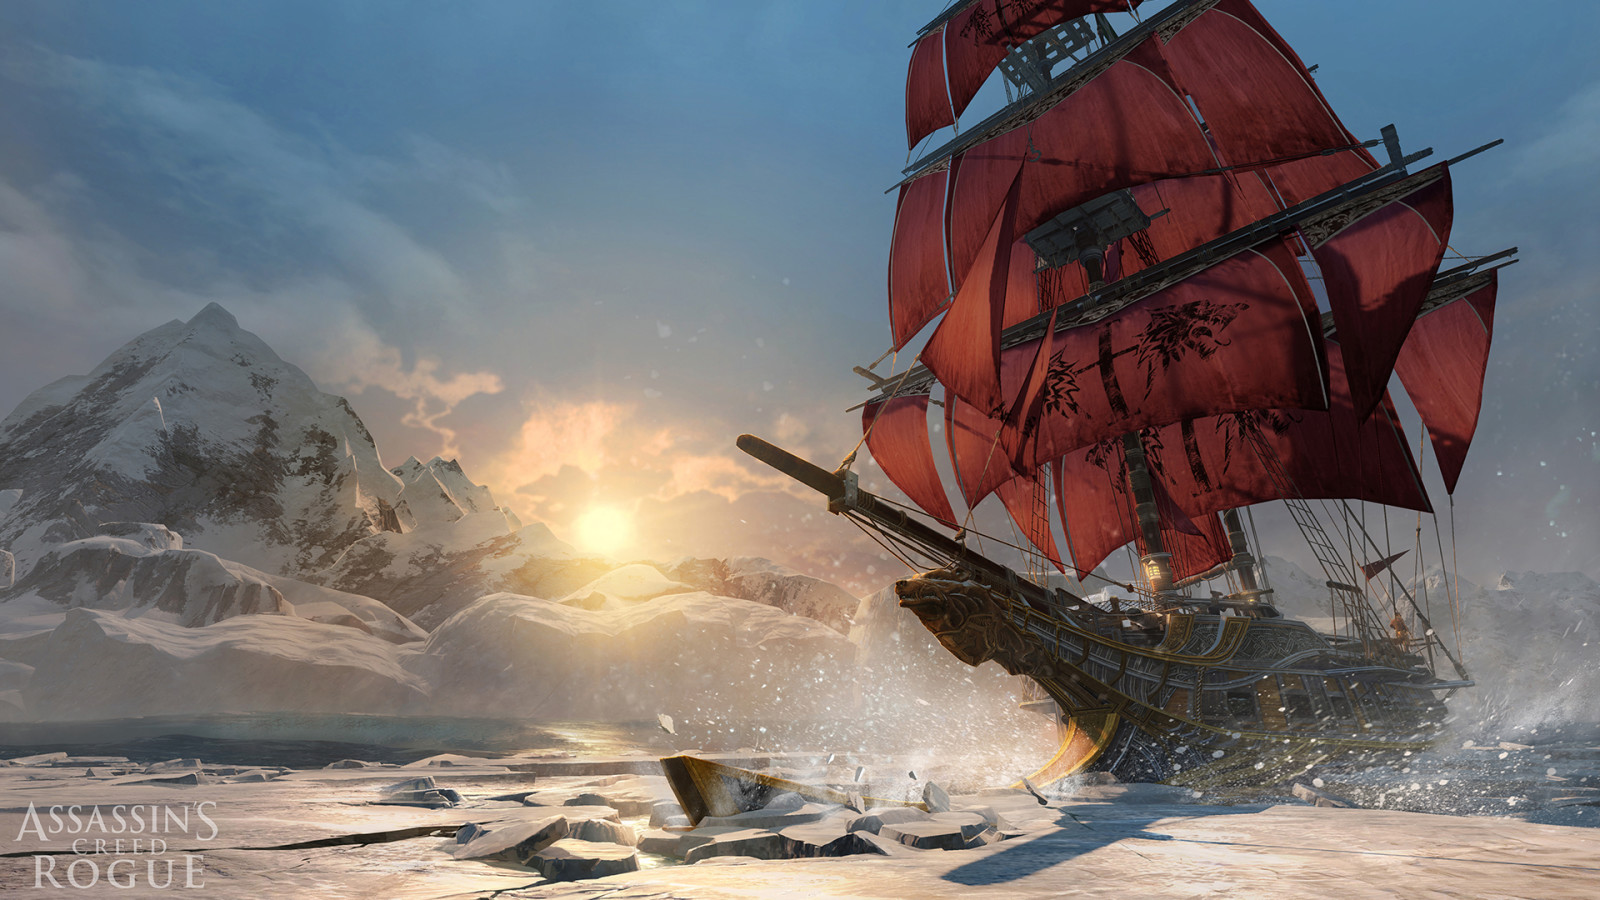 ฤดูหนาว, ทะเล, เรือ, นักฆ่า, แสงเหนือ, Assassin's Creed, ผู้ล่า, ใบเรือ